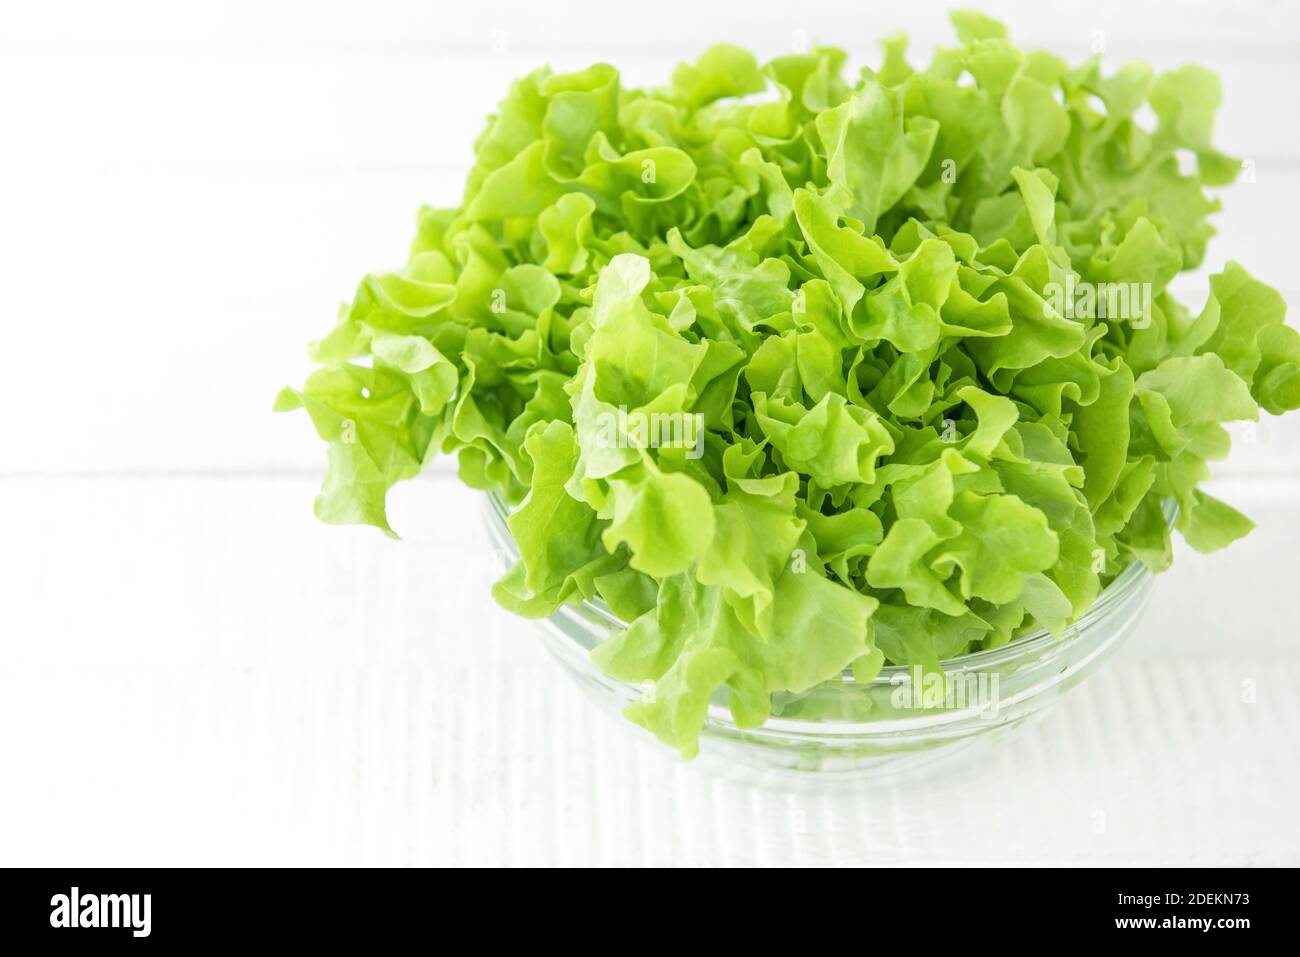 Frisches Bio gesundes grünes Eichensalat Gemüse in einer Glasschüssel auf weißem Holztisch in der Küche, bereit, als Salat oder Koch zu essen Stockfoto